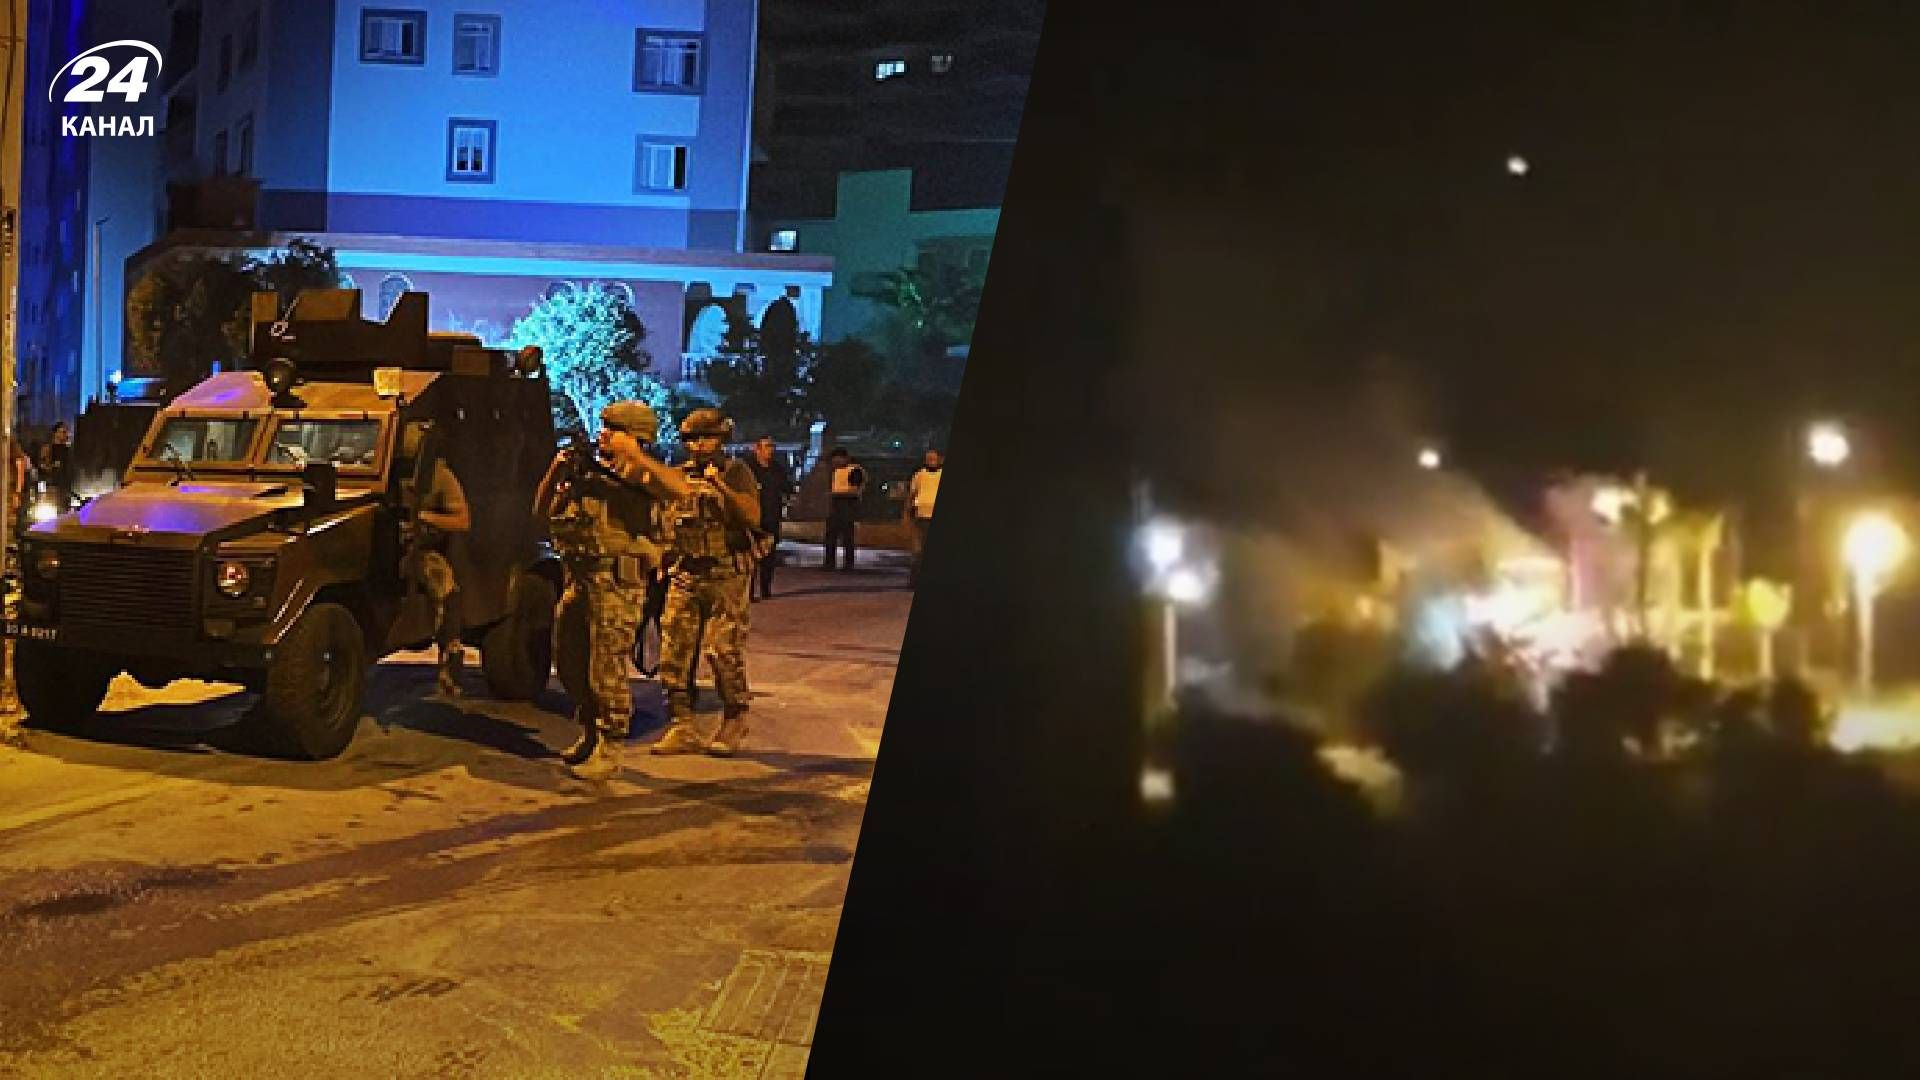 Теракт у Туреччині - невідомі стріляли у поліцейсбких, у мережі пишуть про смертників